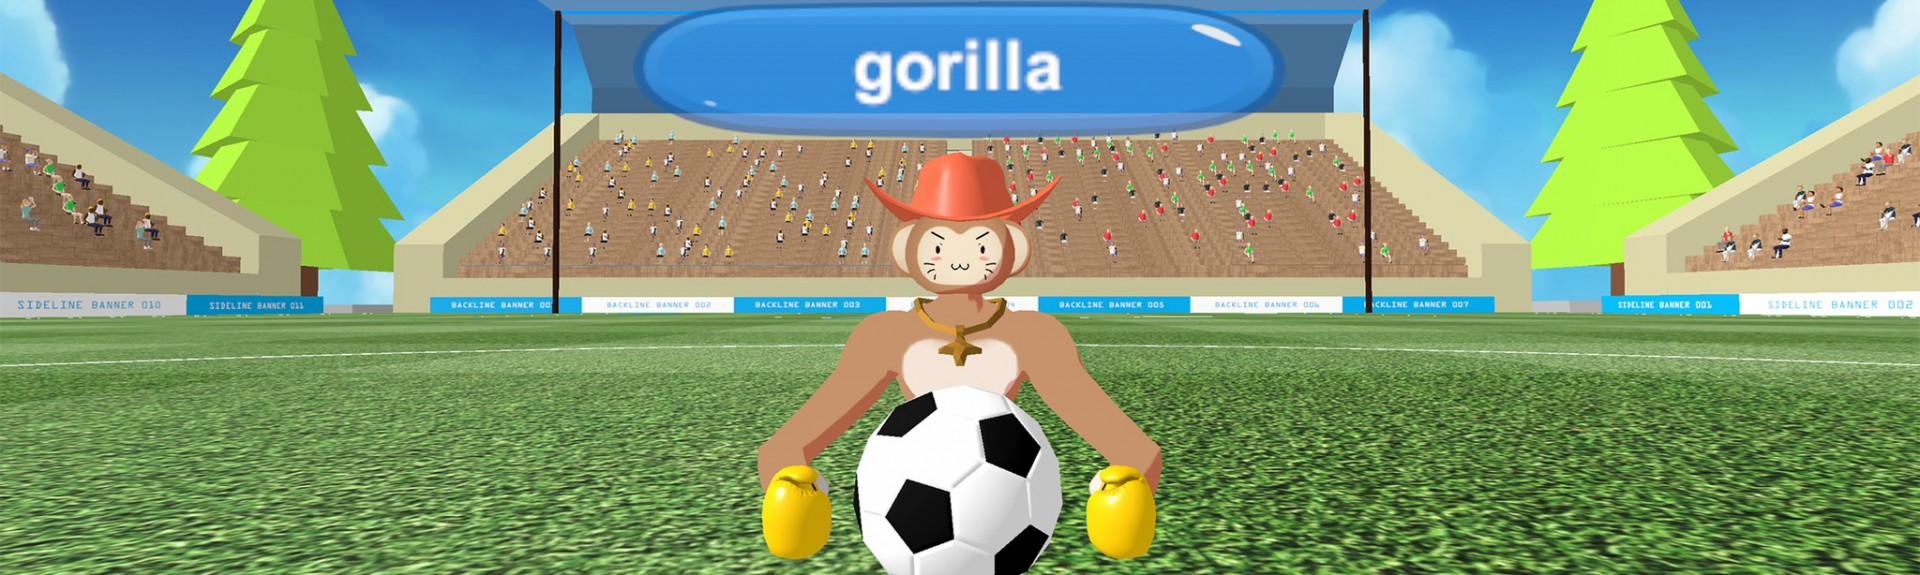 Gorilla Soccer Online